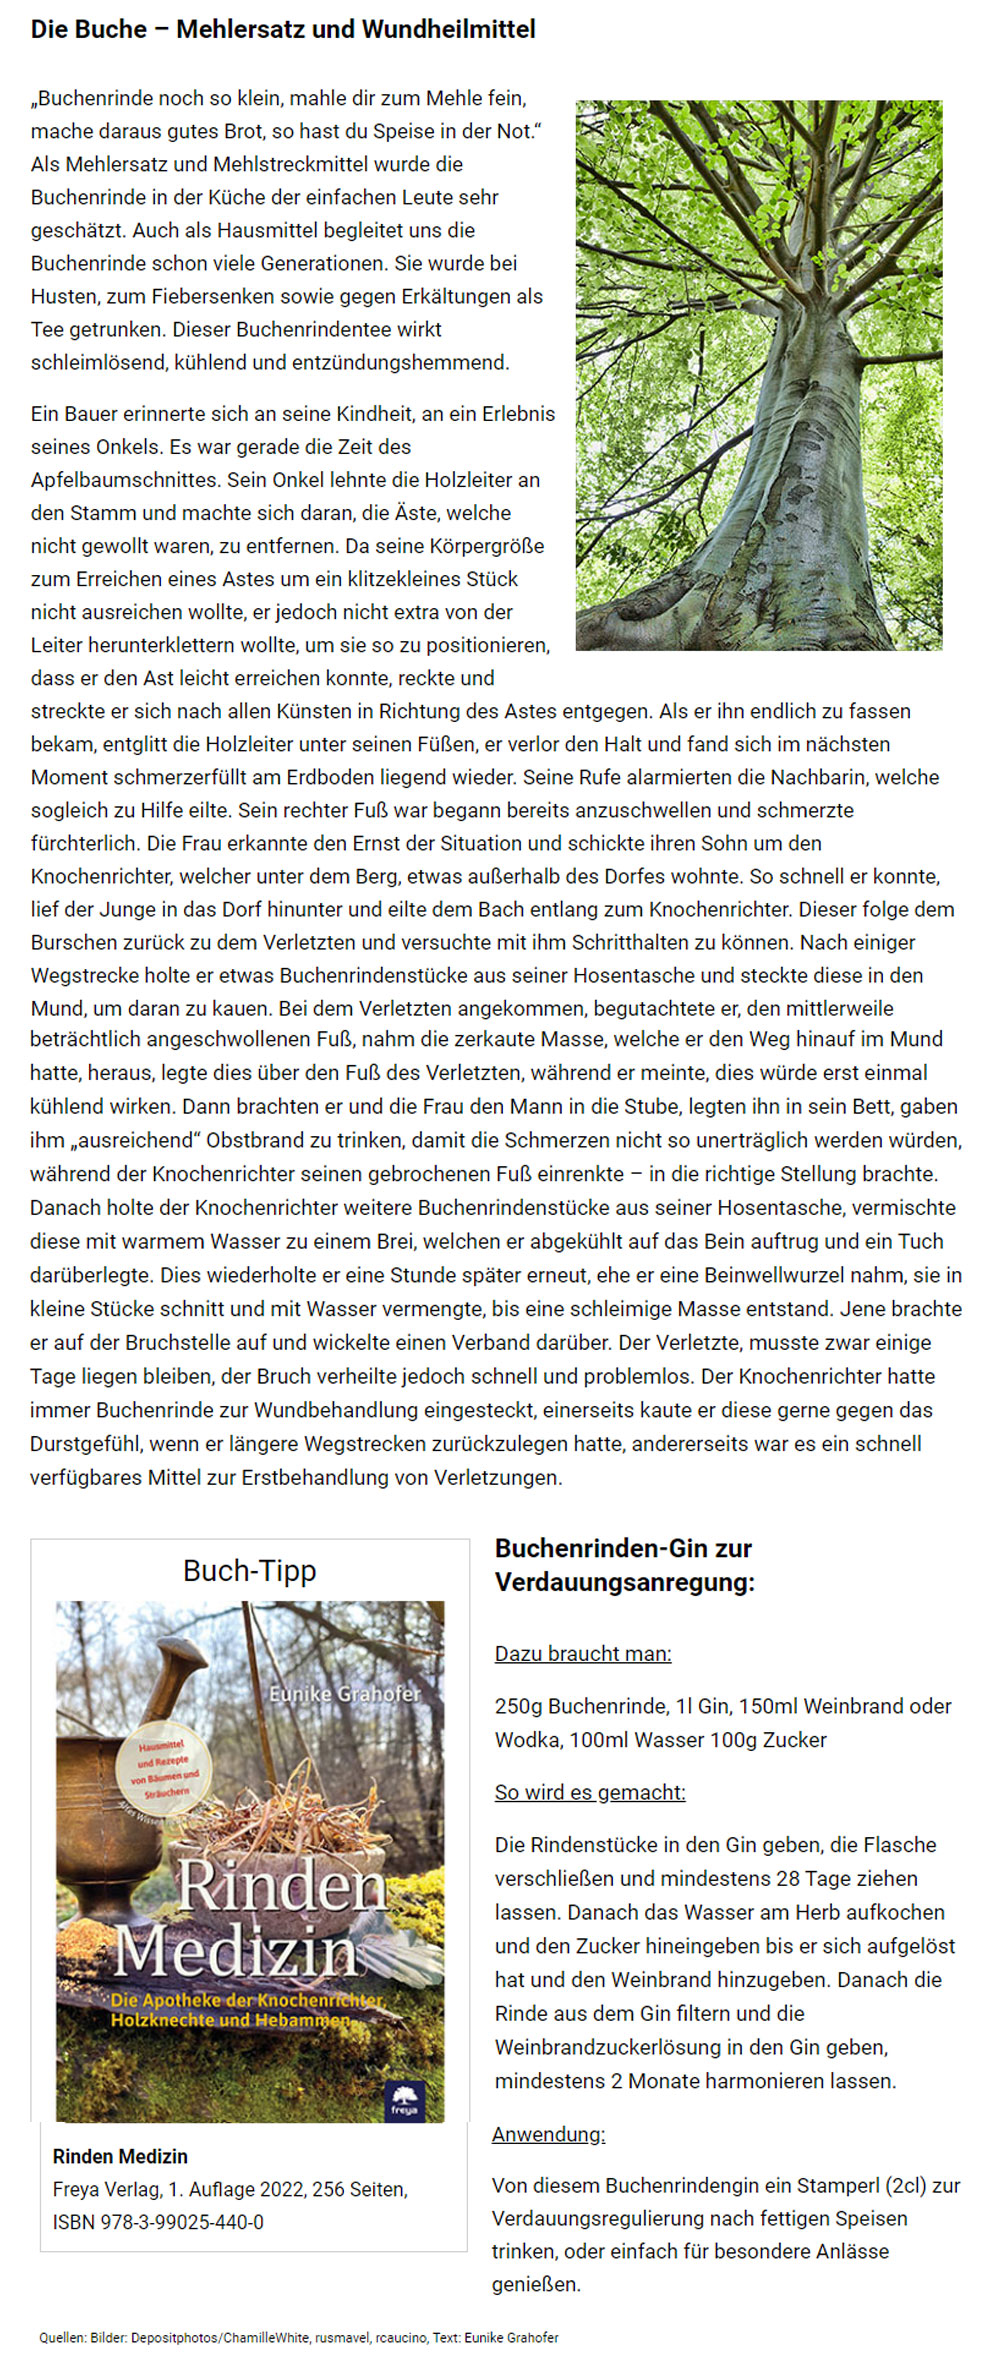 Auszug Bericht Ecowoman Buchenrinde Mehlersatz